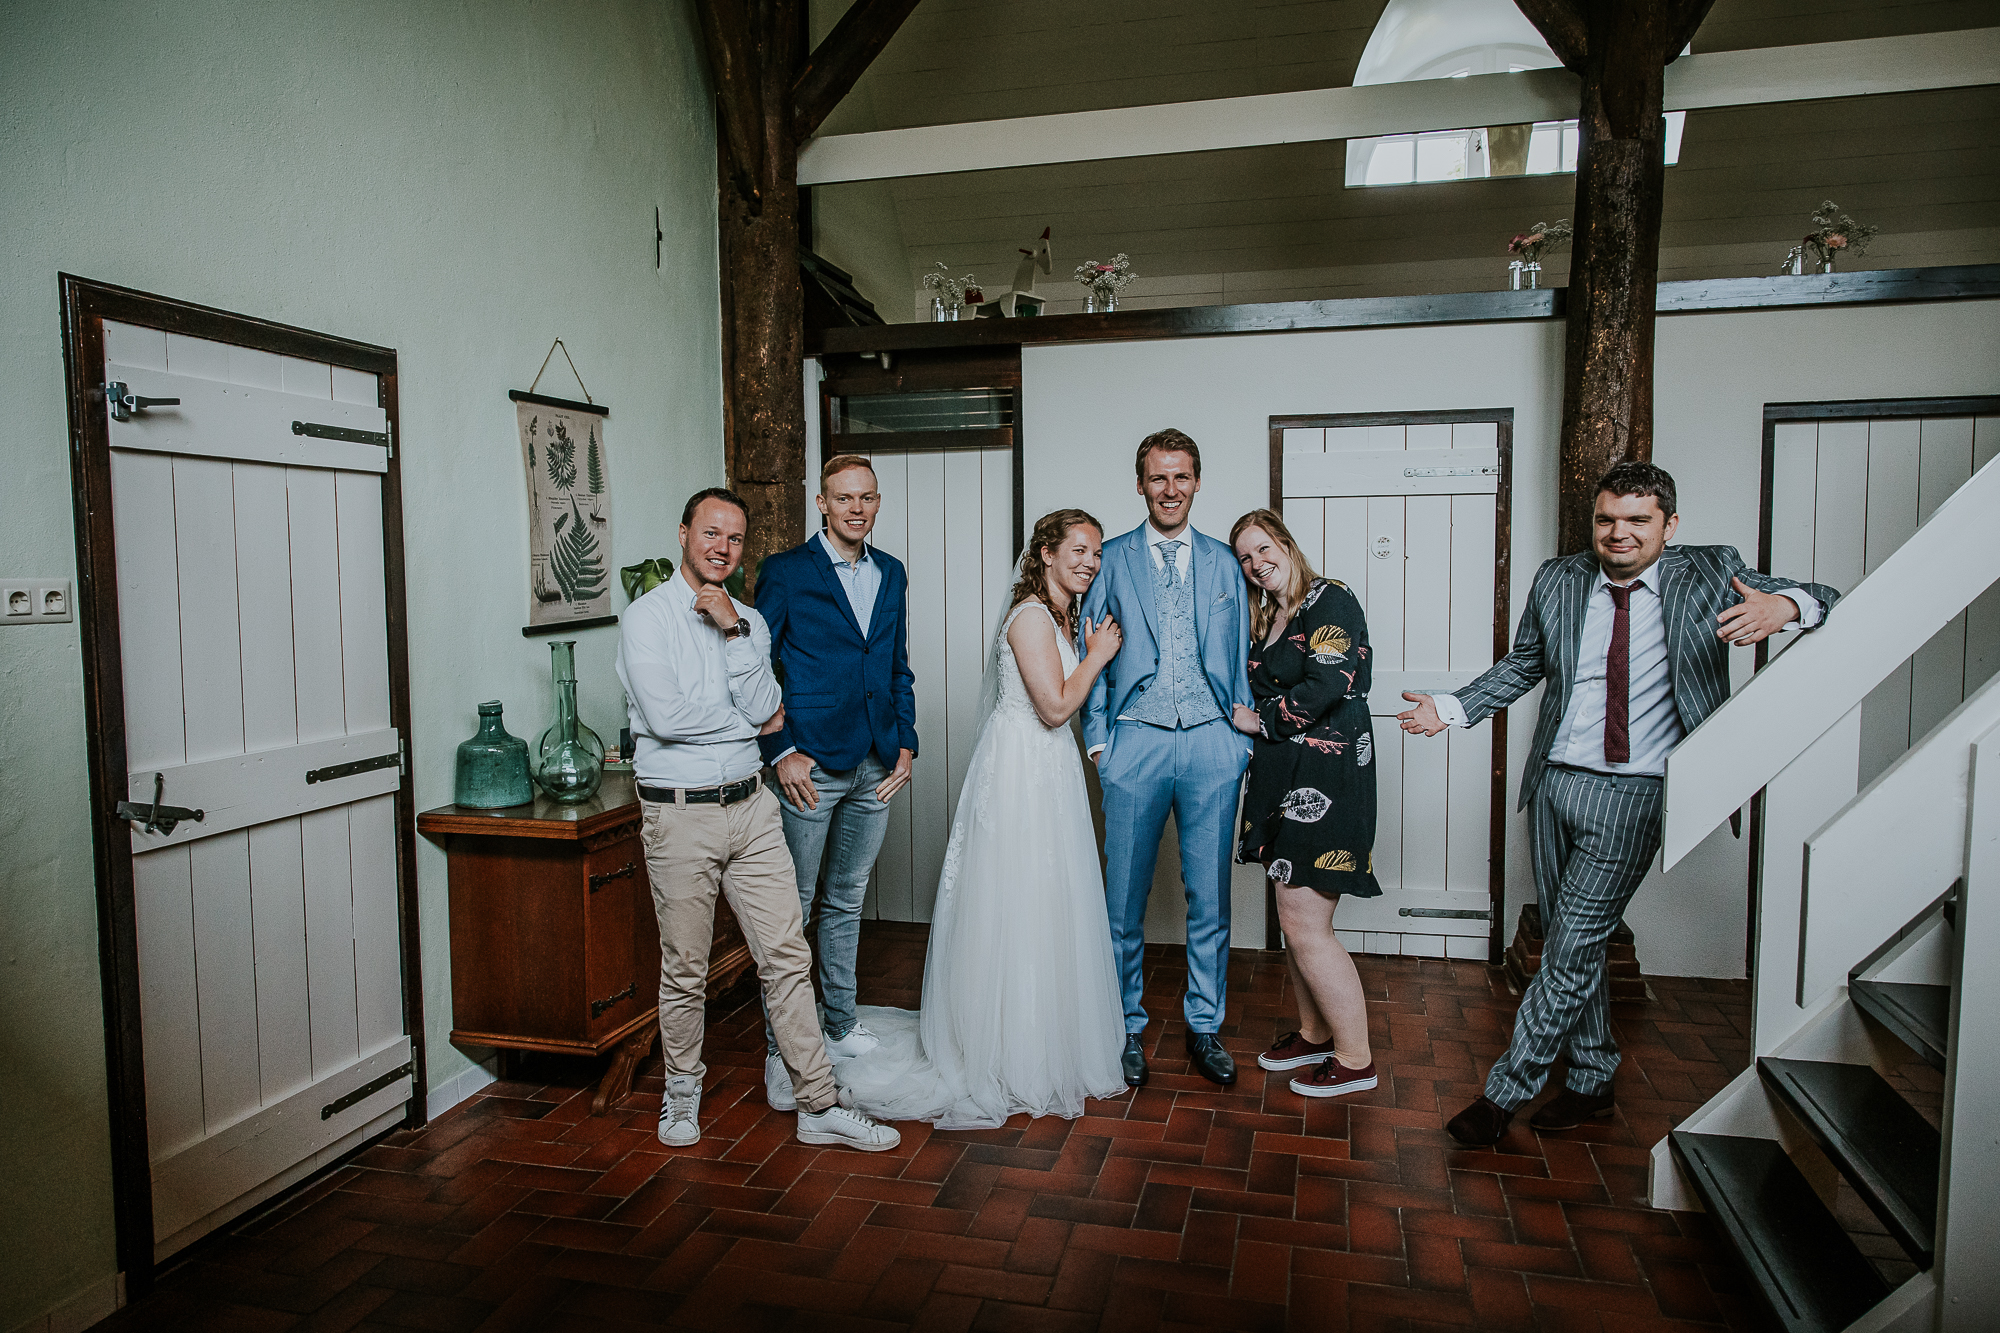 Leuke groepsfoto van de vrienden tijdens de bruiloft. Huwelijksfotografie door huwelijksfotograaf Nickie Fotografie uit Dokkum, Friesland.